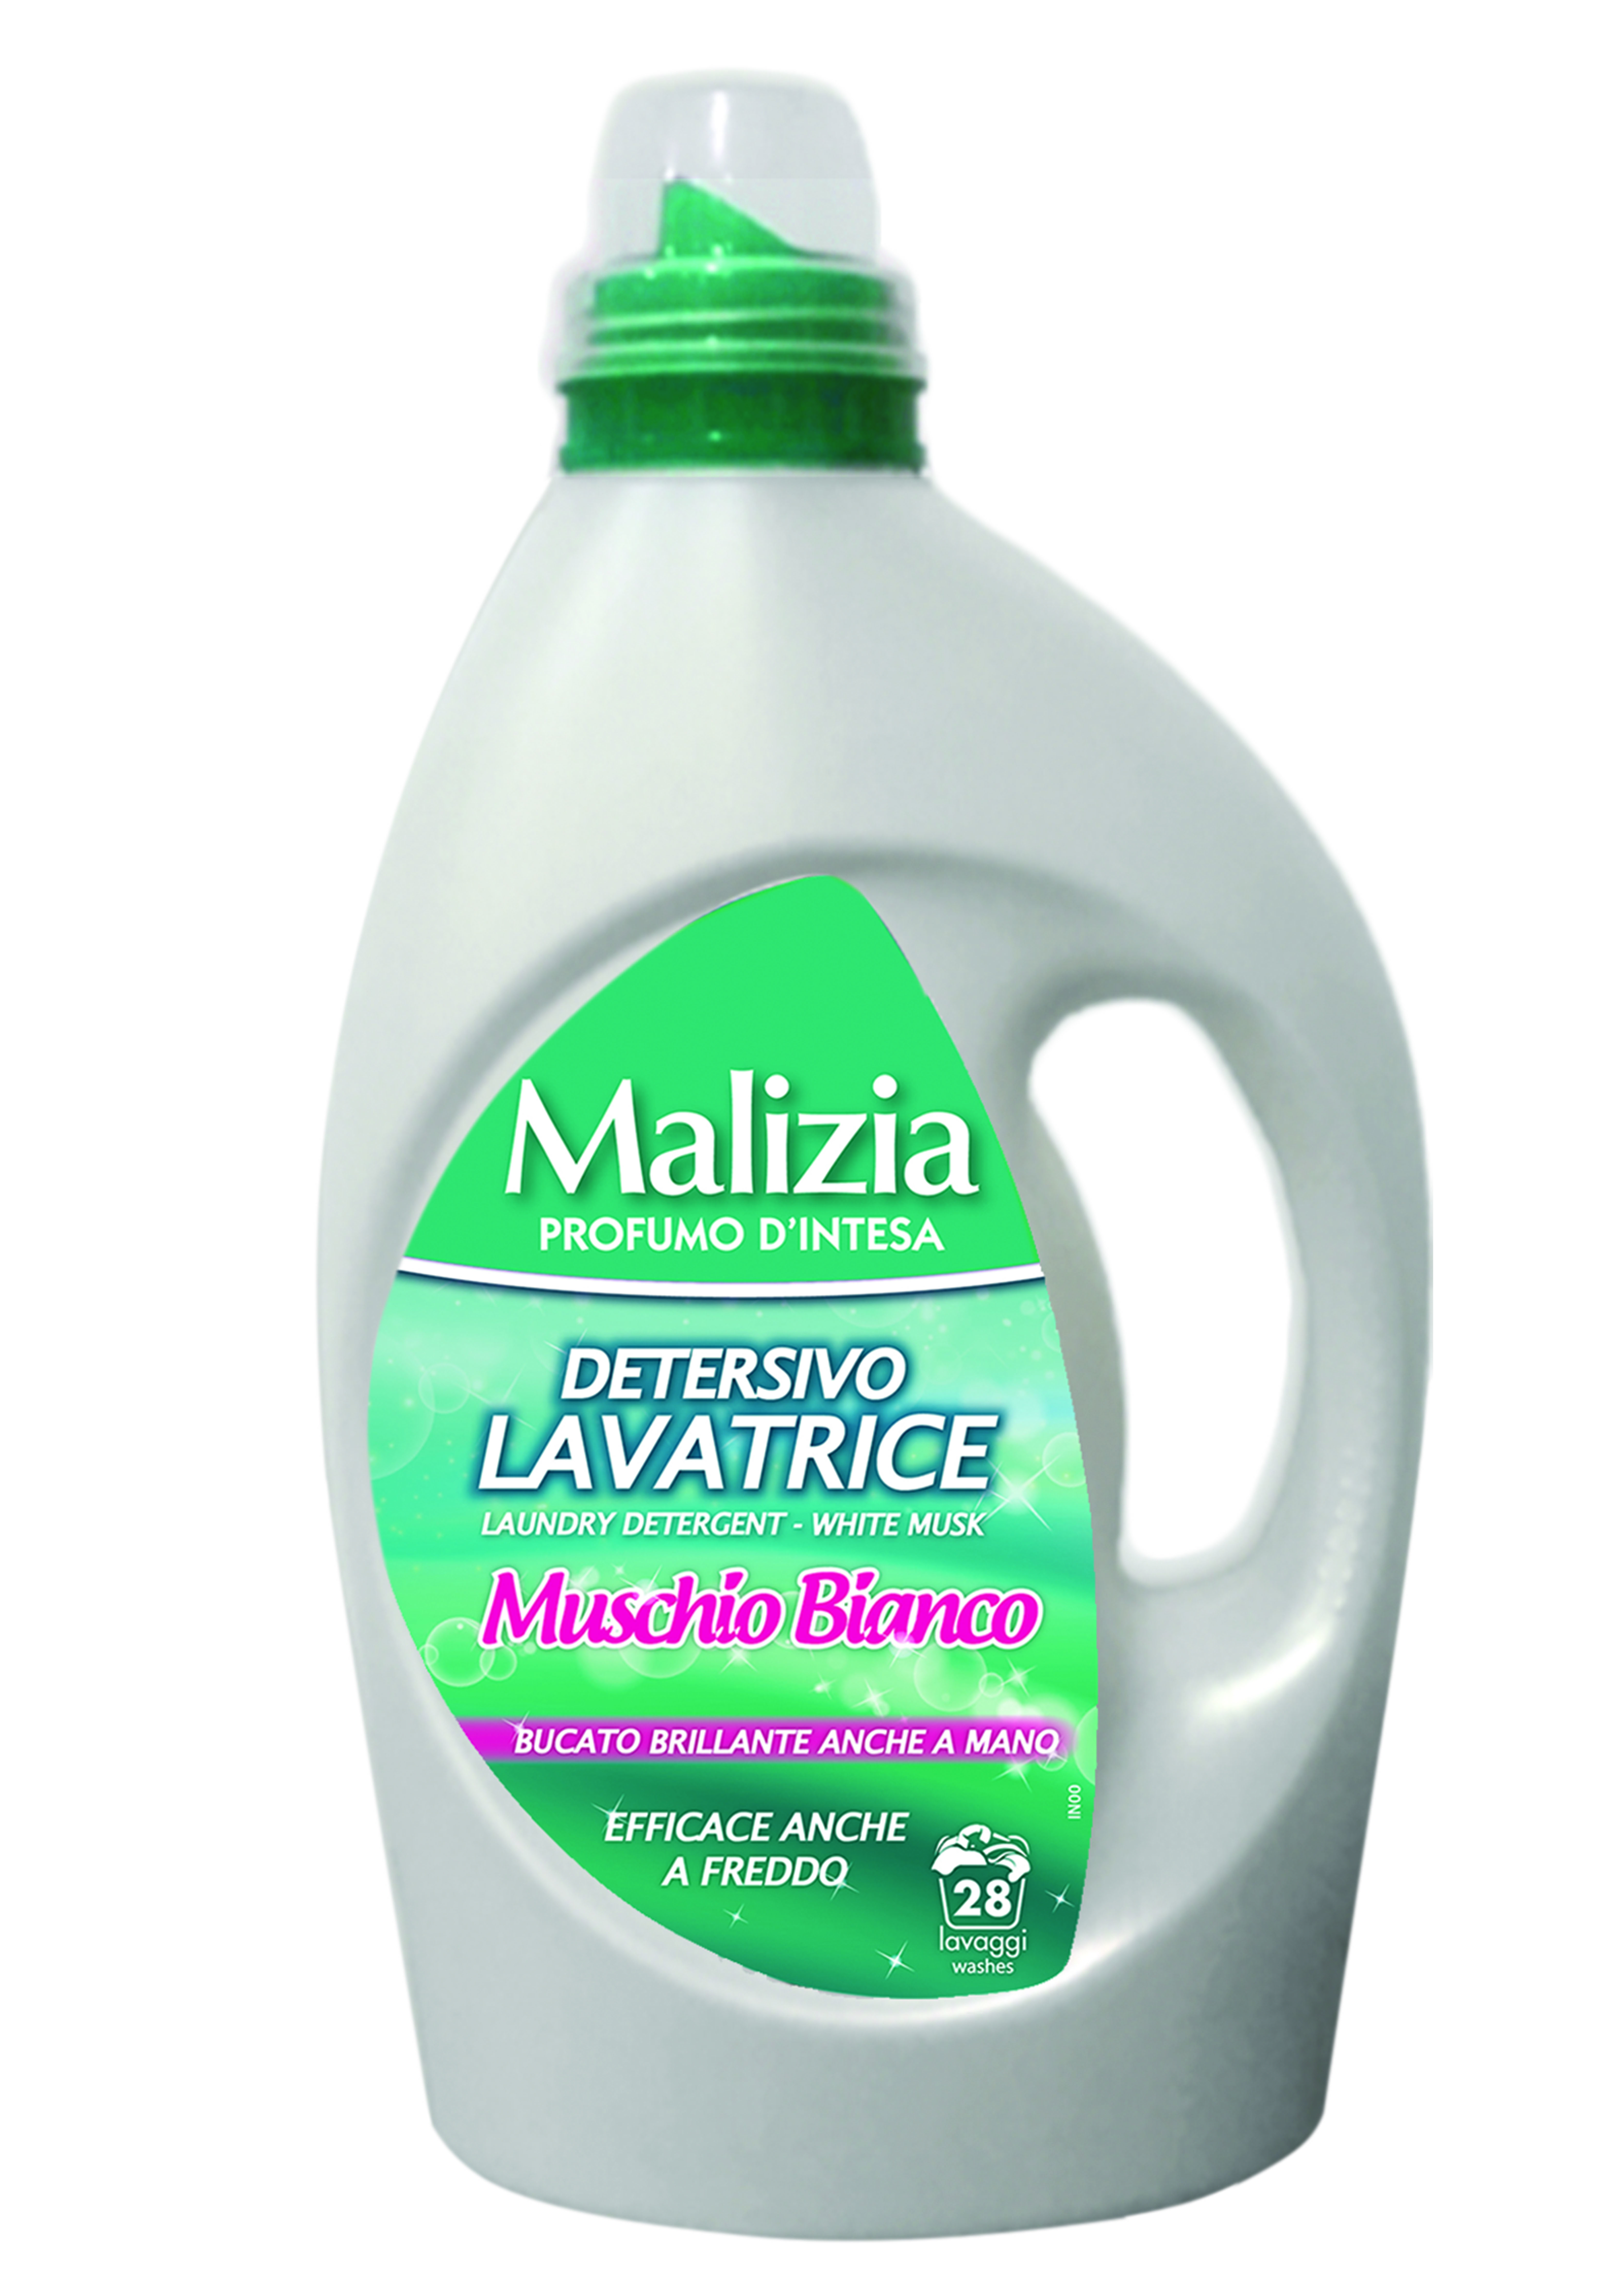 Nước giặt Malizia xạ hương trắng 1820 ml/ Nhập khẩu Italy